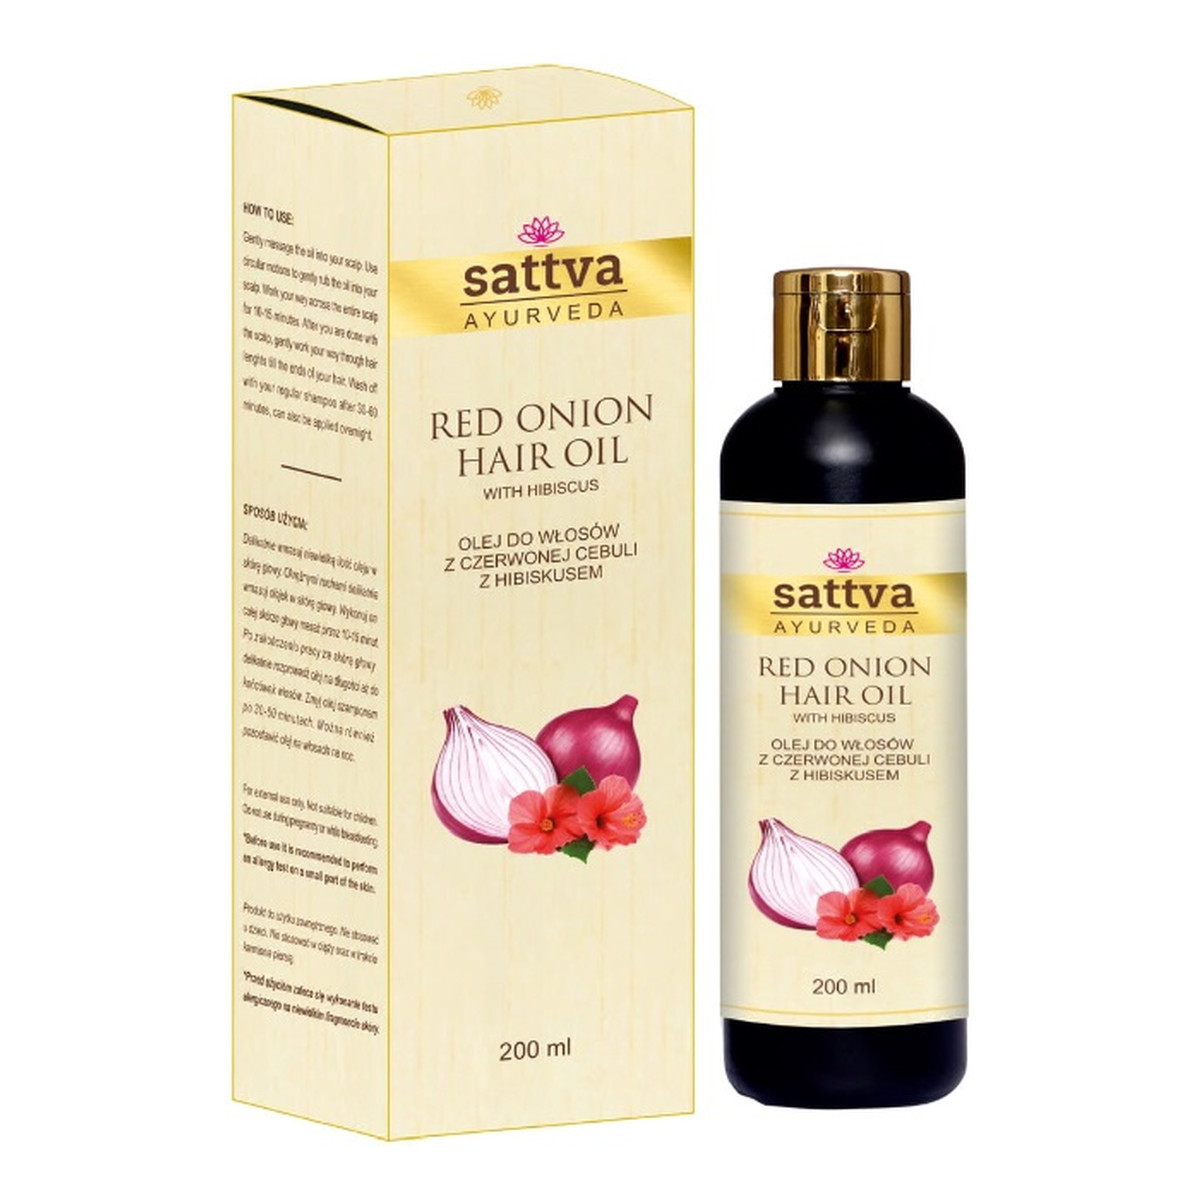 Sattva Hair oil olej do włosów z czerwonej cebuli red onion 200ml